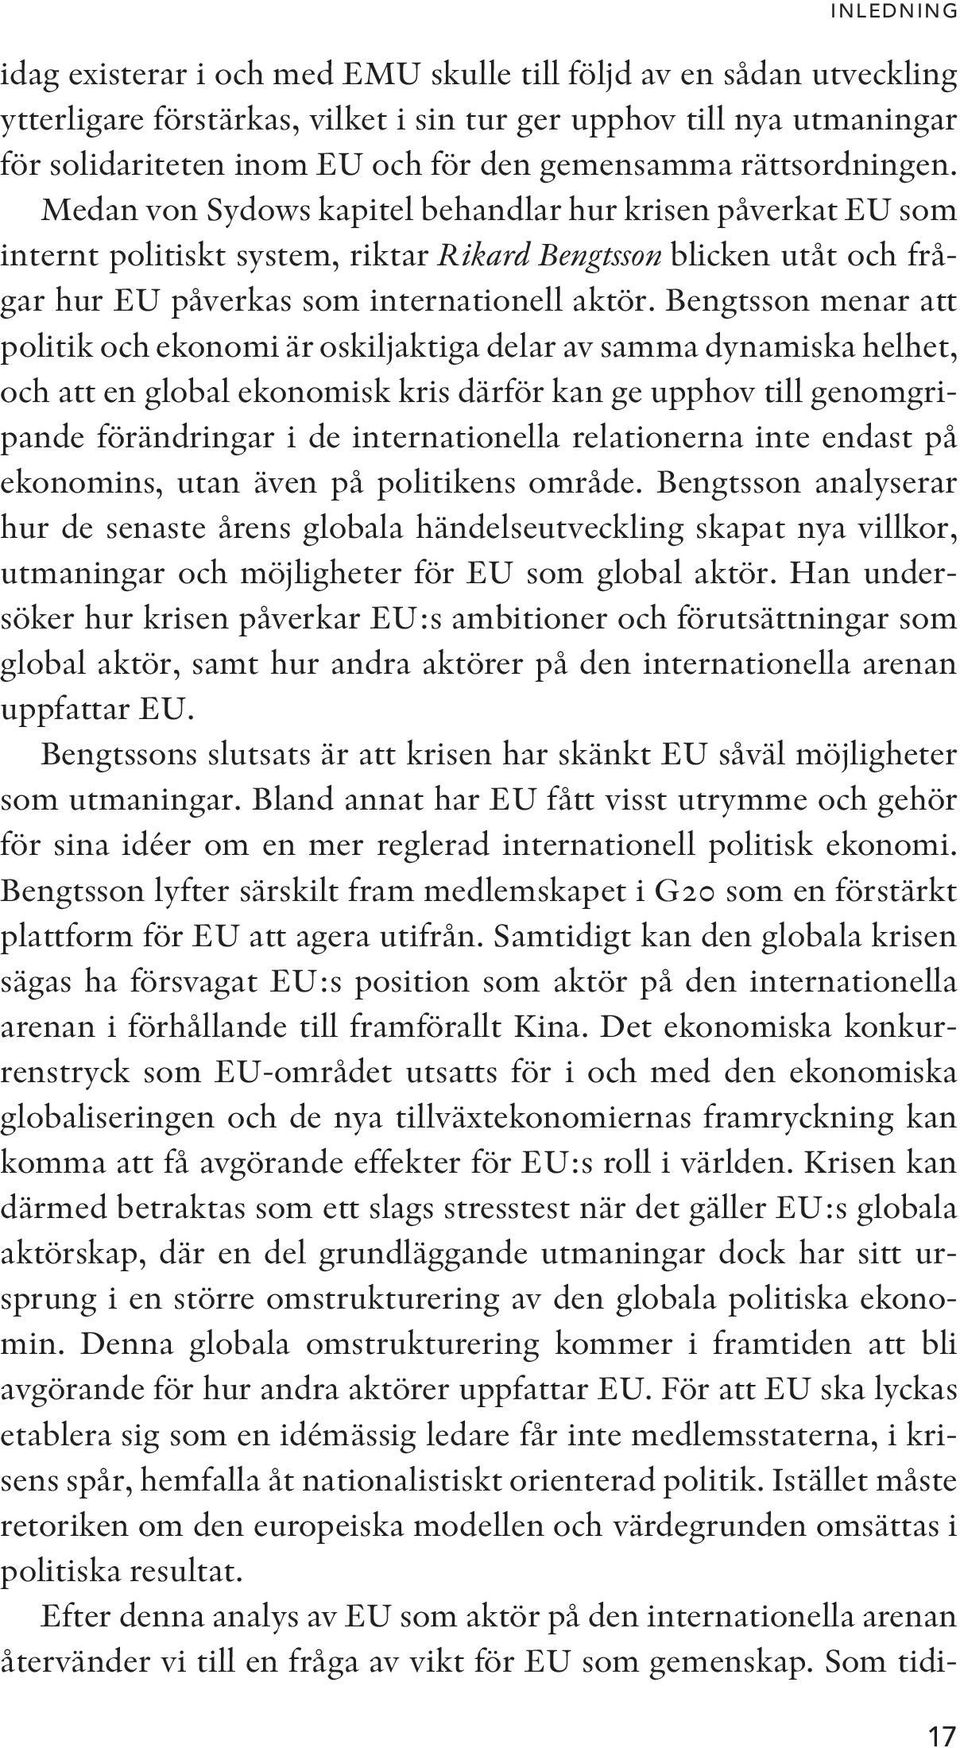 Medan von Sydows kapitel behandlar hur krisen påverkat EU som internt politiskt system, riktar Rikard Bengtsson blicken utåt och frågar hur EU påverkas som internationell aktör.